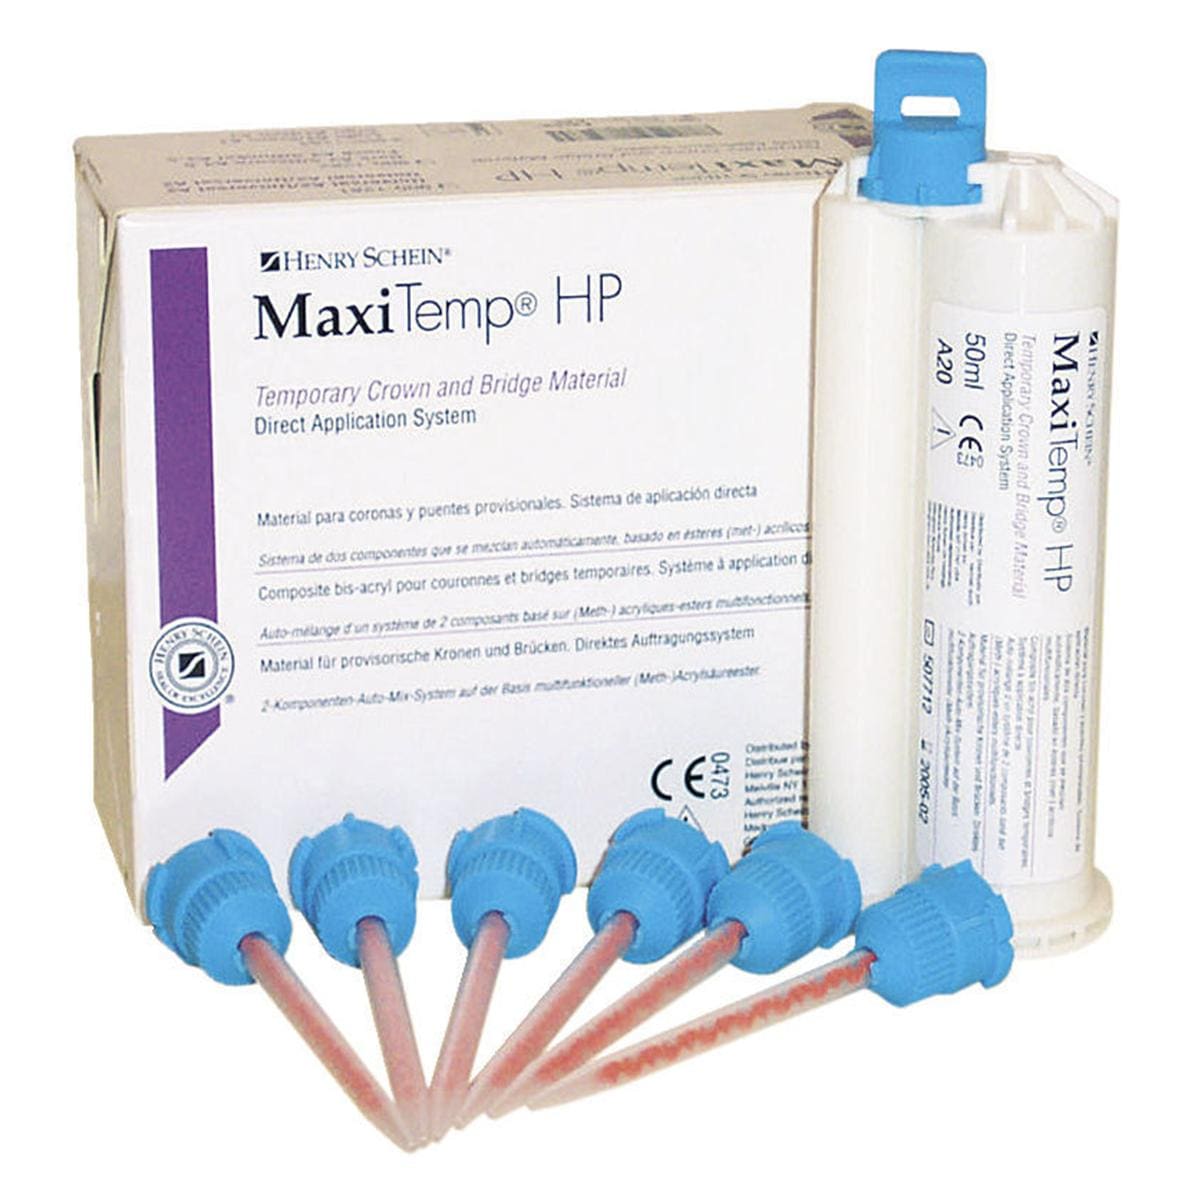 MaxiTemp HP intropack - A1